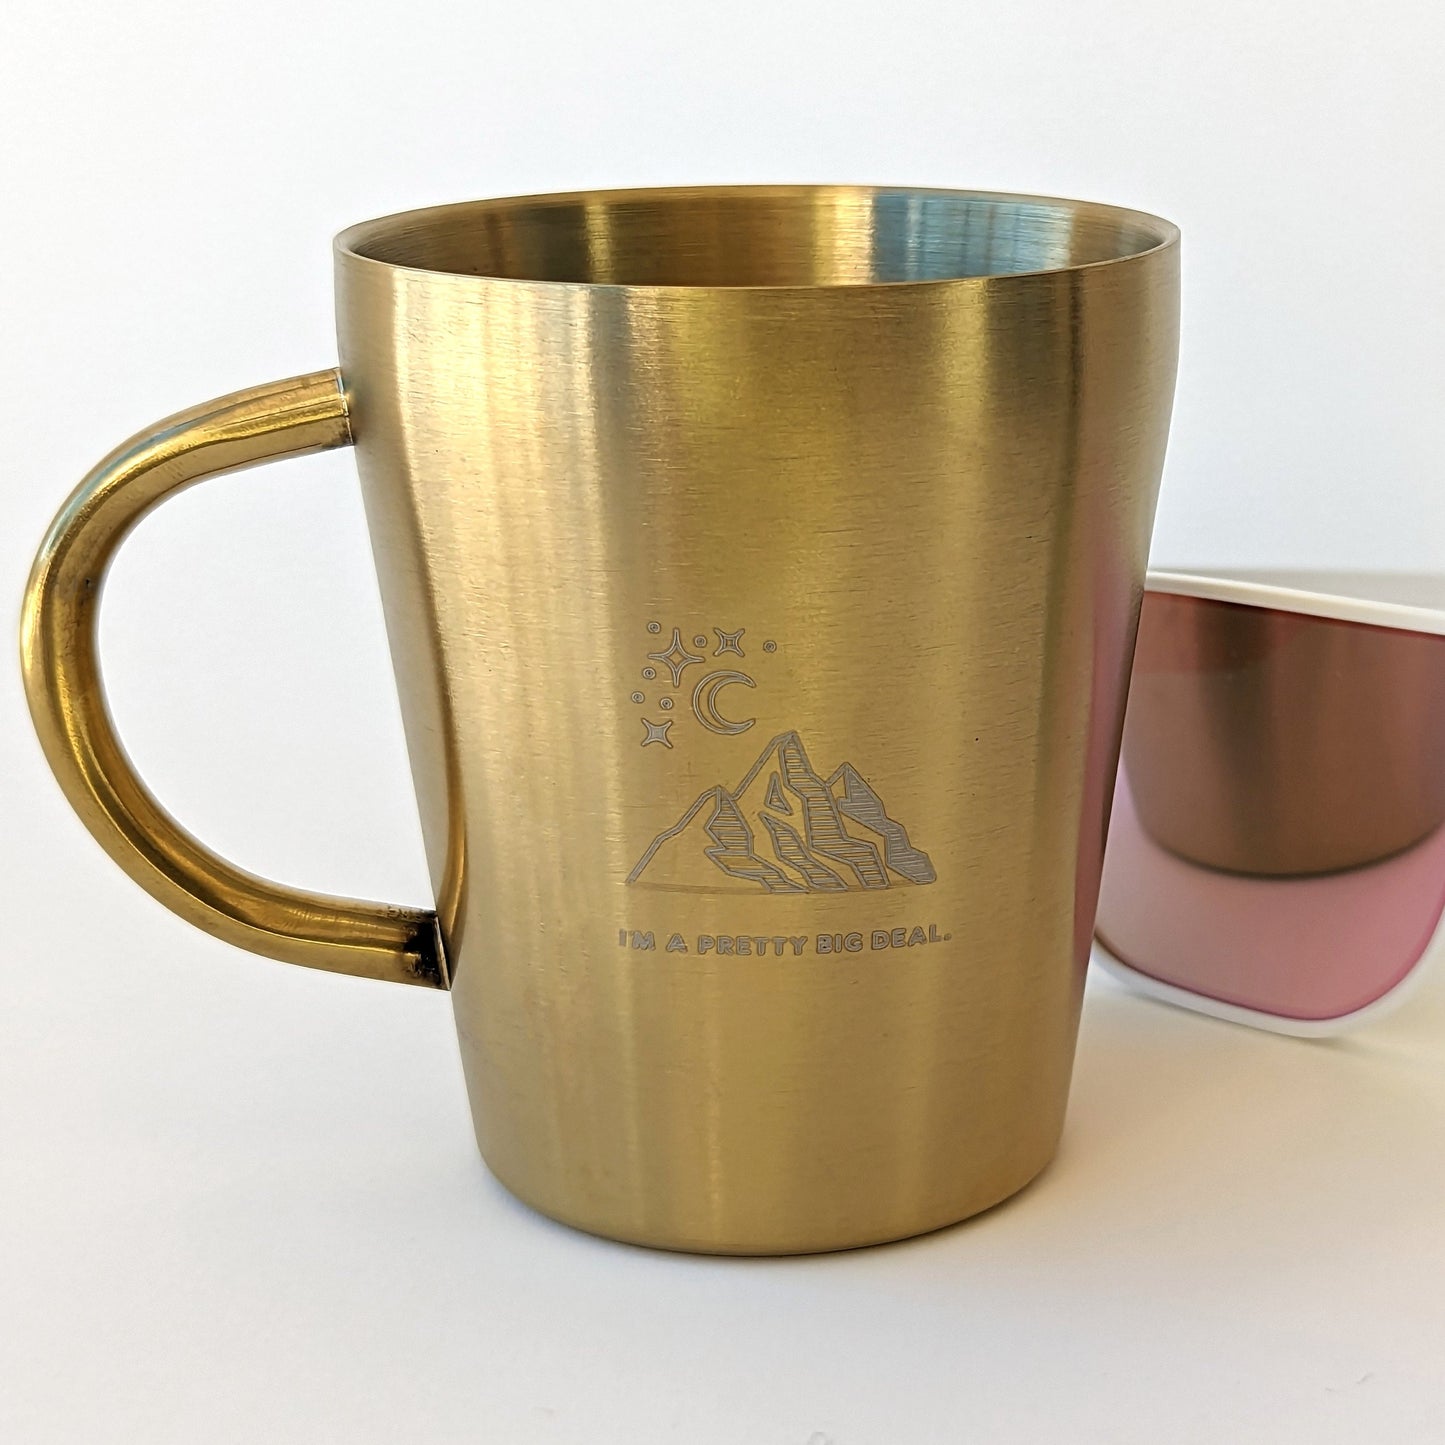 10oz Gold Stainless Steel Camping Mug